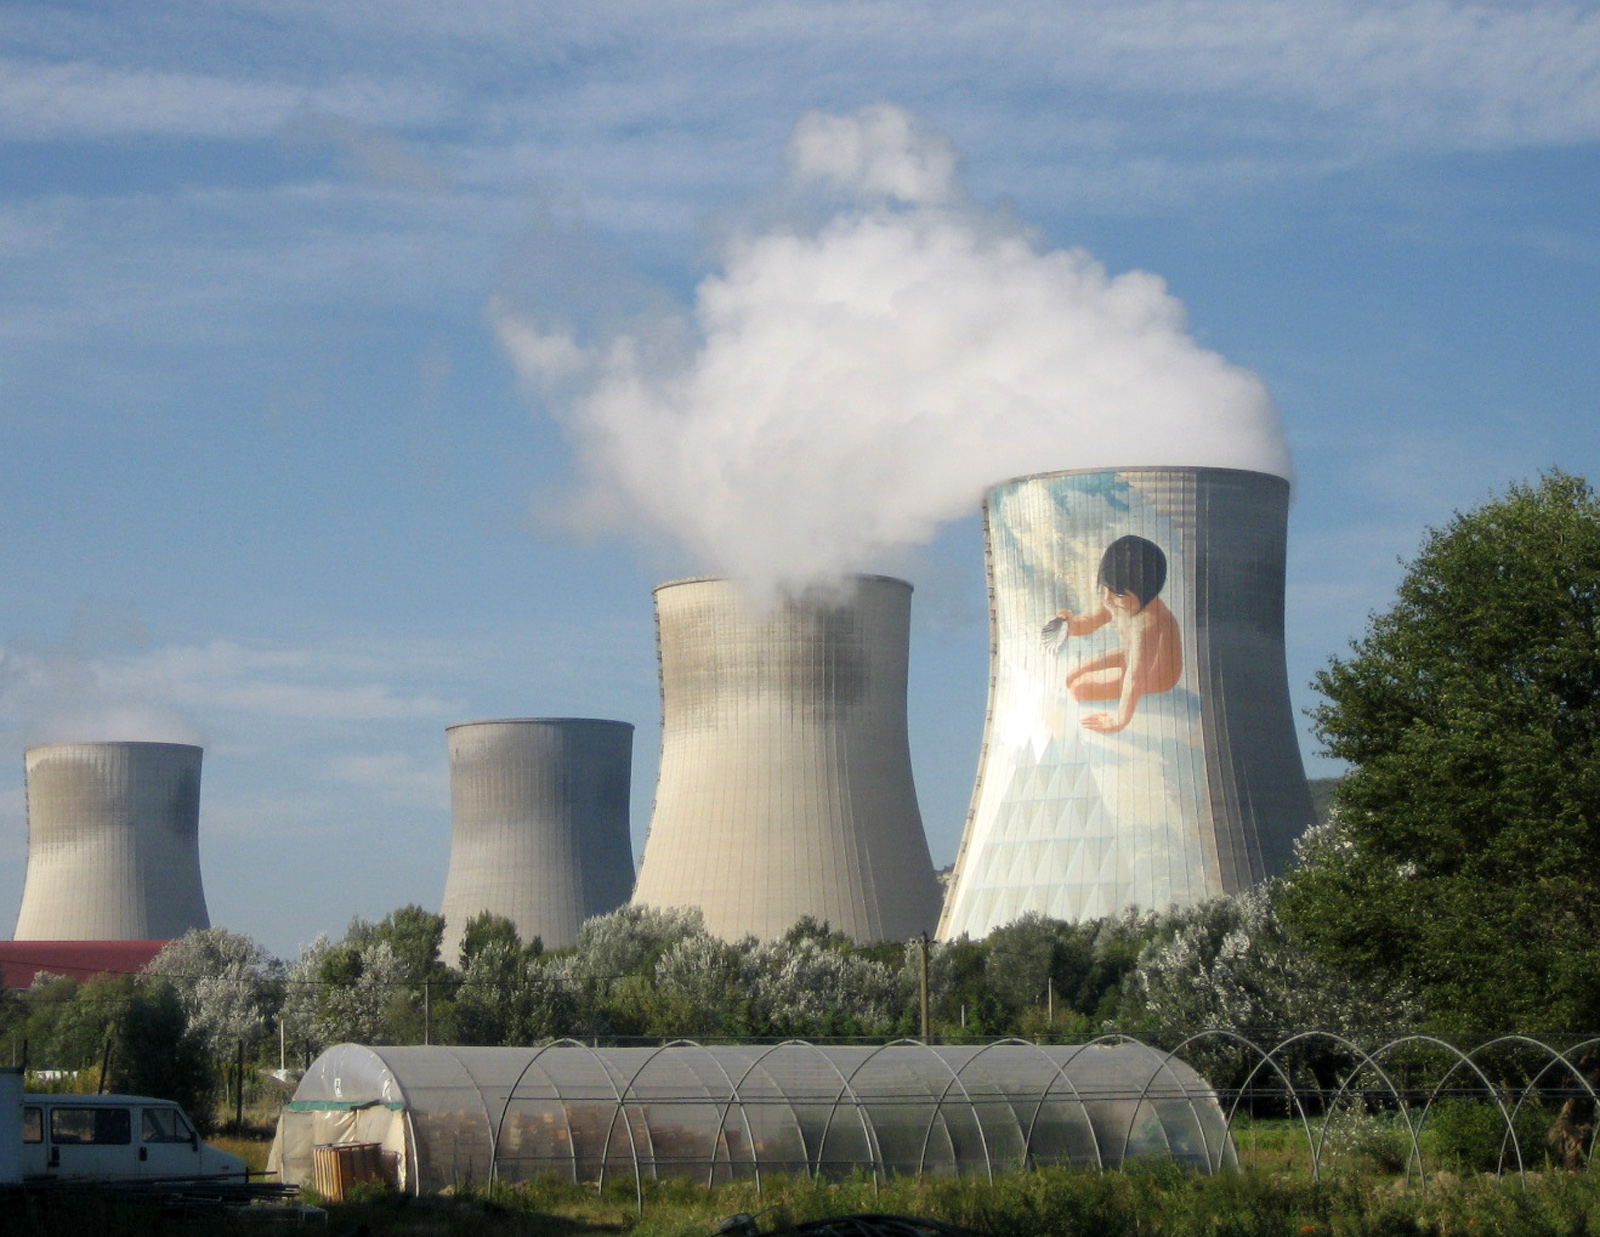 Elektrownia jądrowa Cruas. Źródło: Flickr